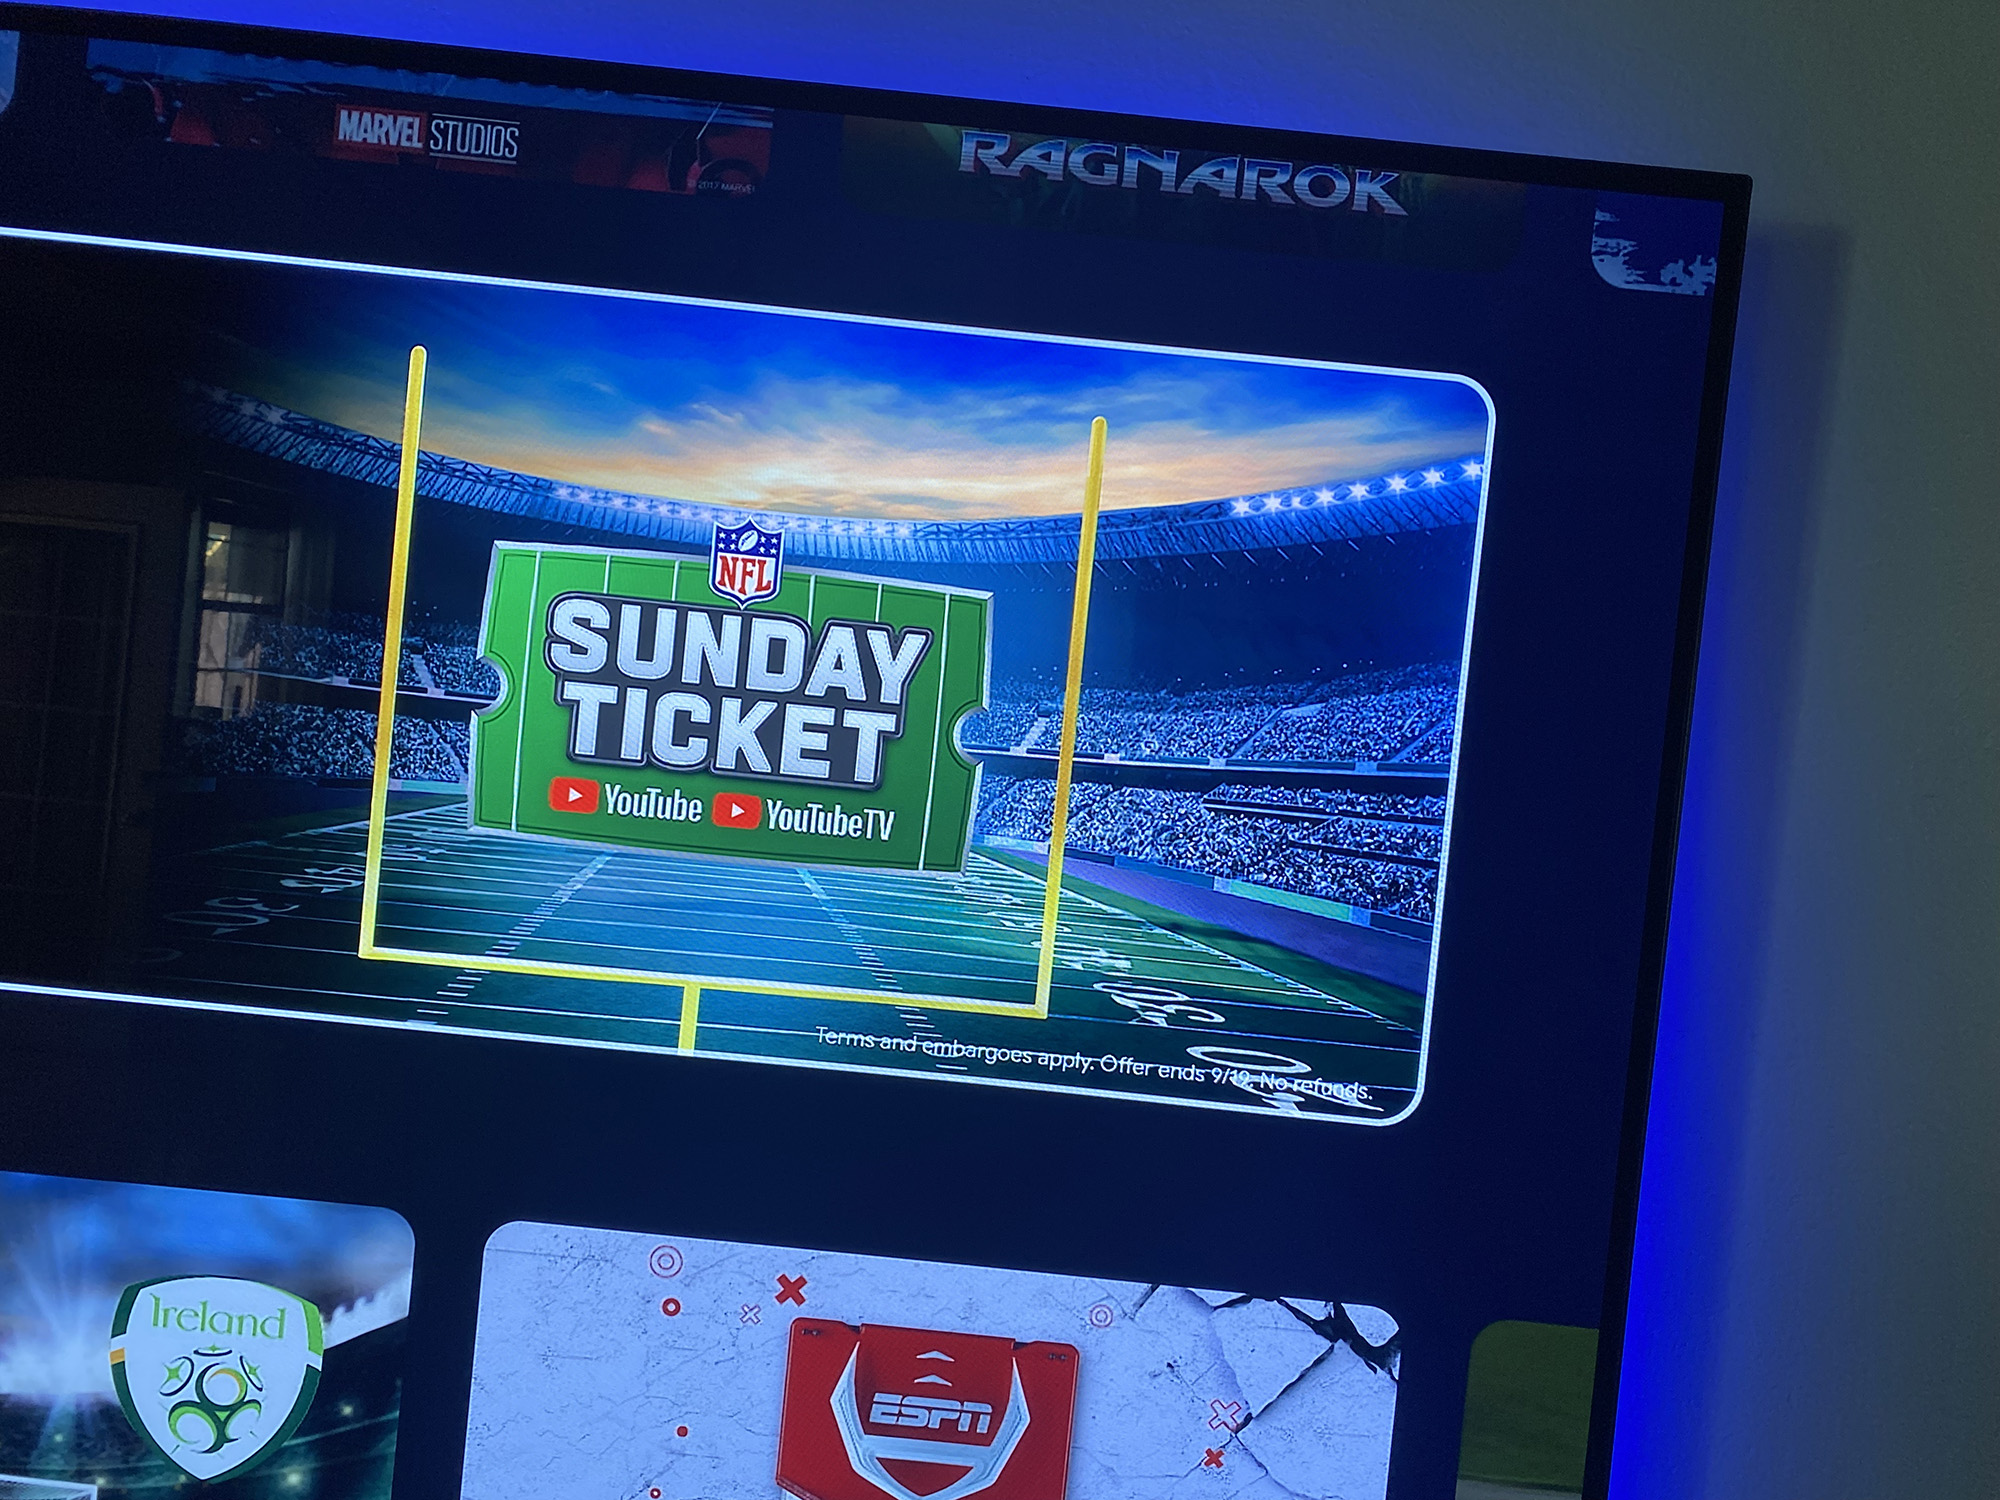 NFL Sunday Ticket on a TV.